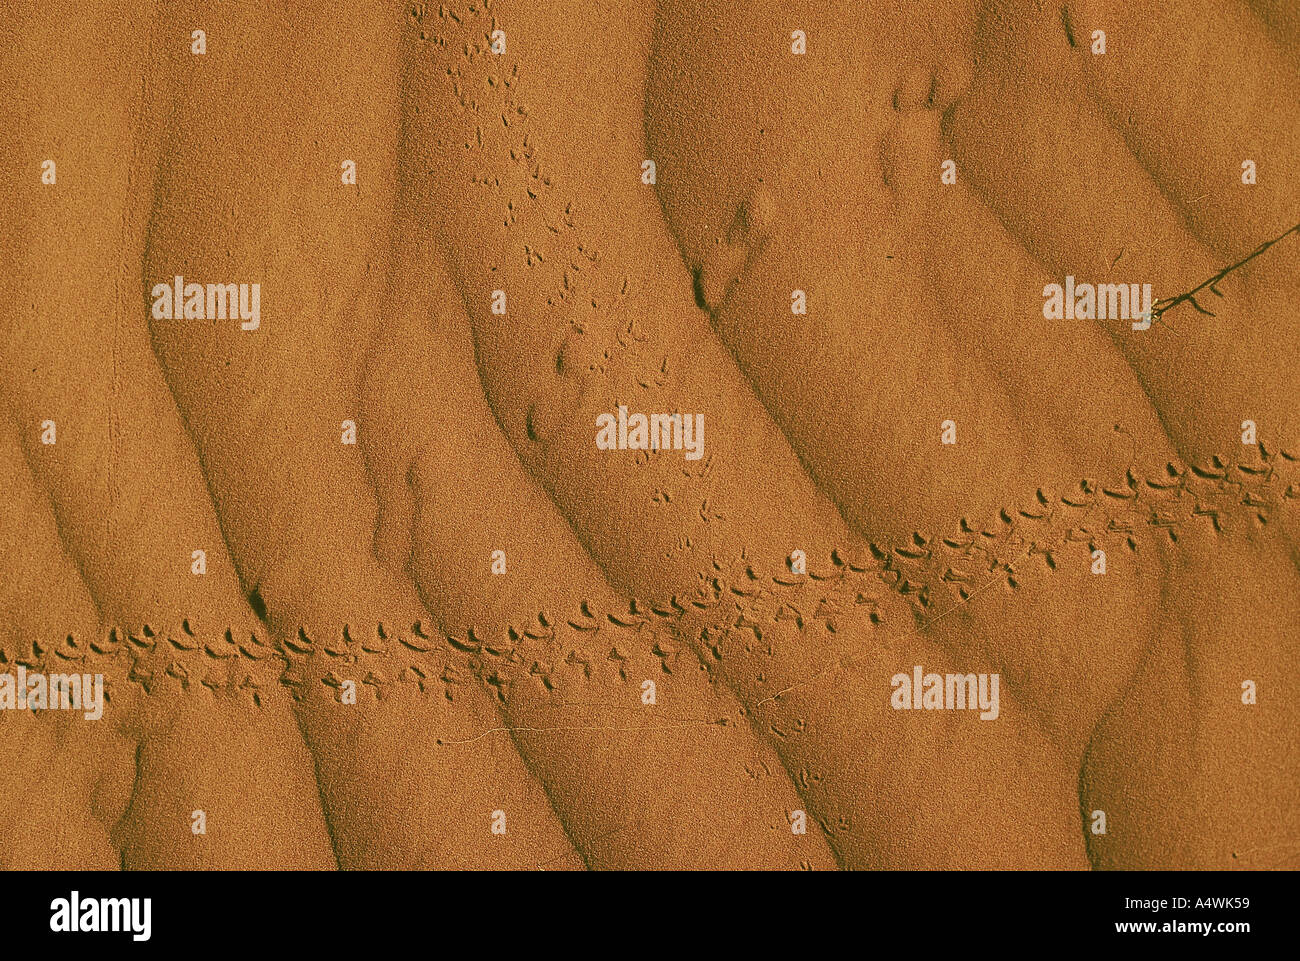 Strzelecki Wüsten Tier Fußdruck auf Sand Australien Stockfoto